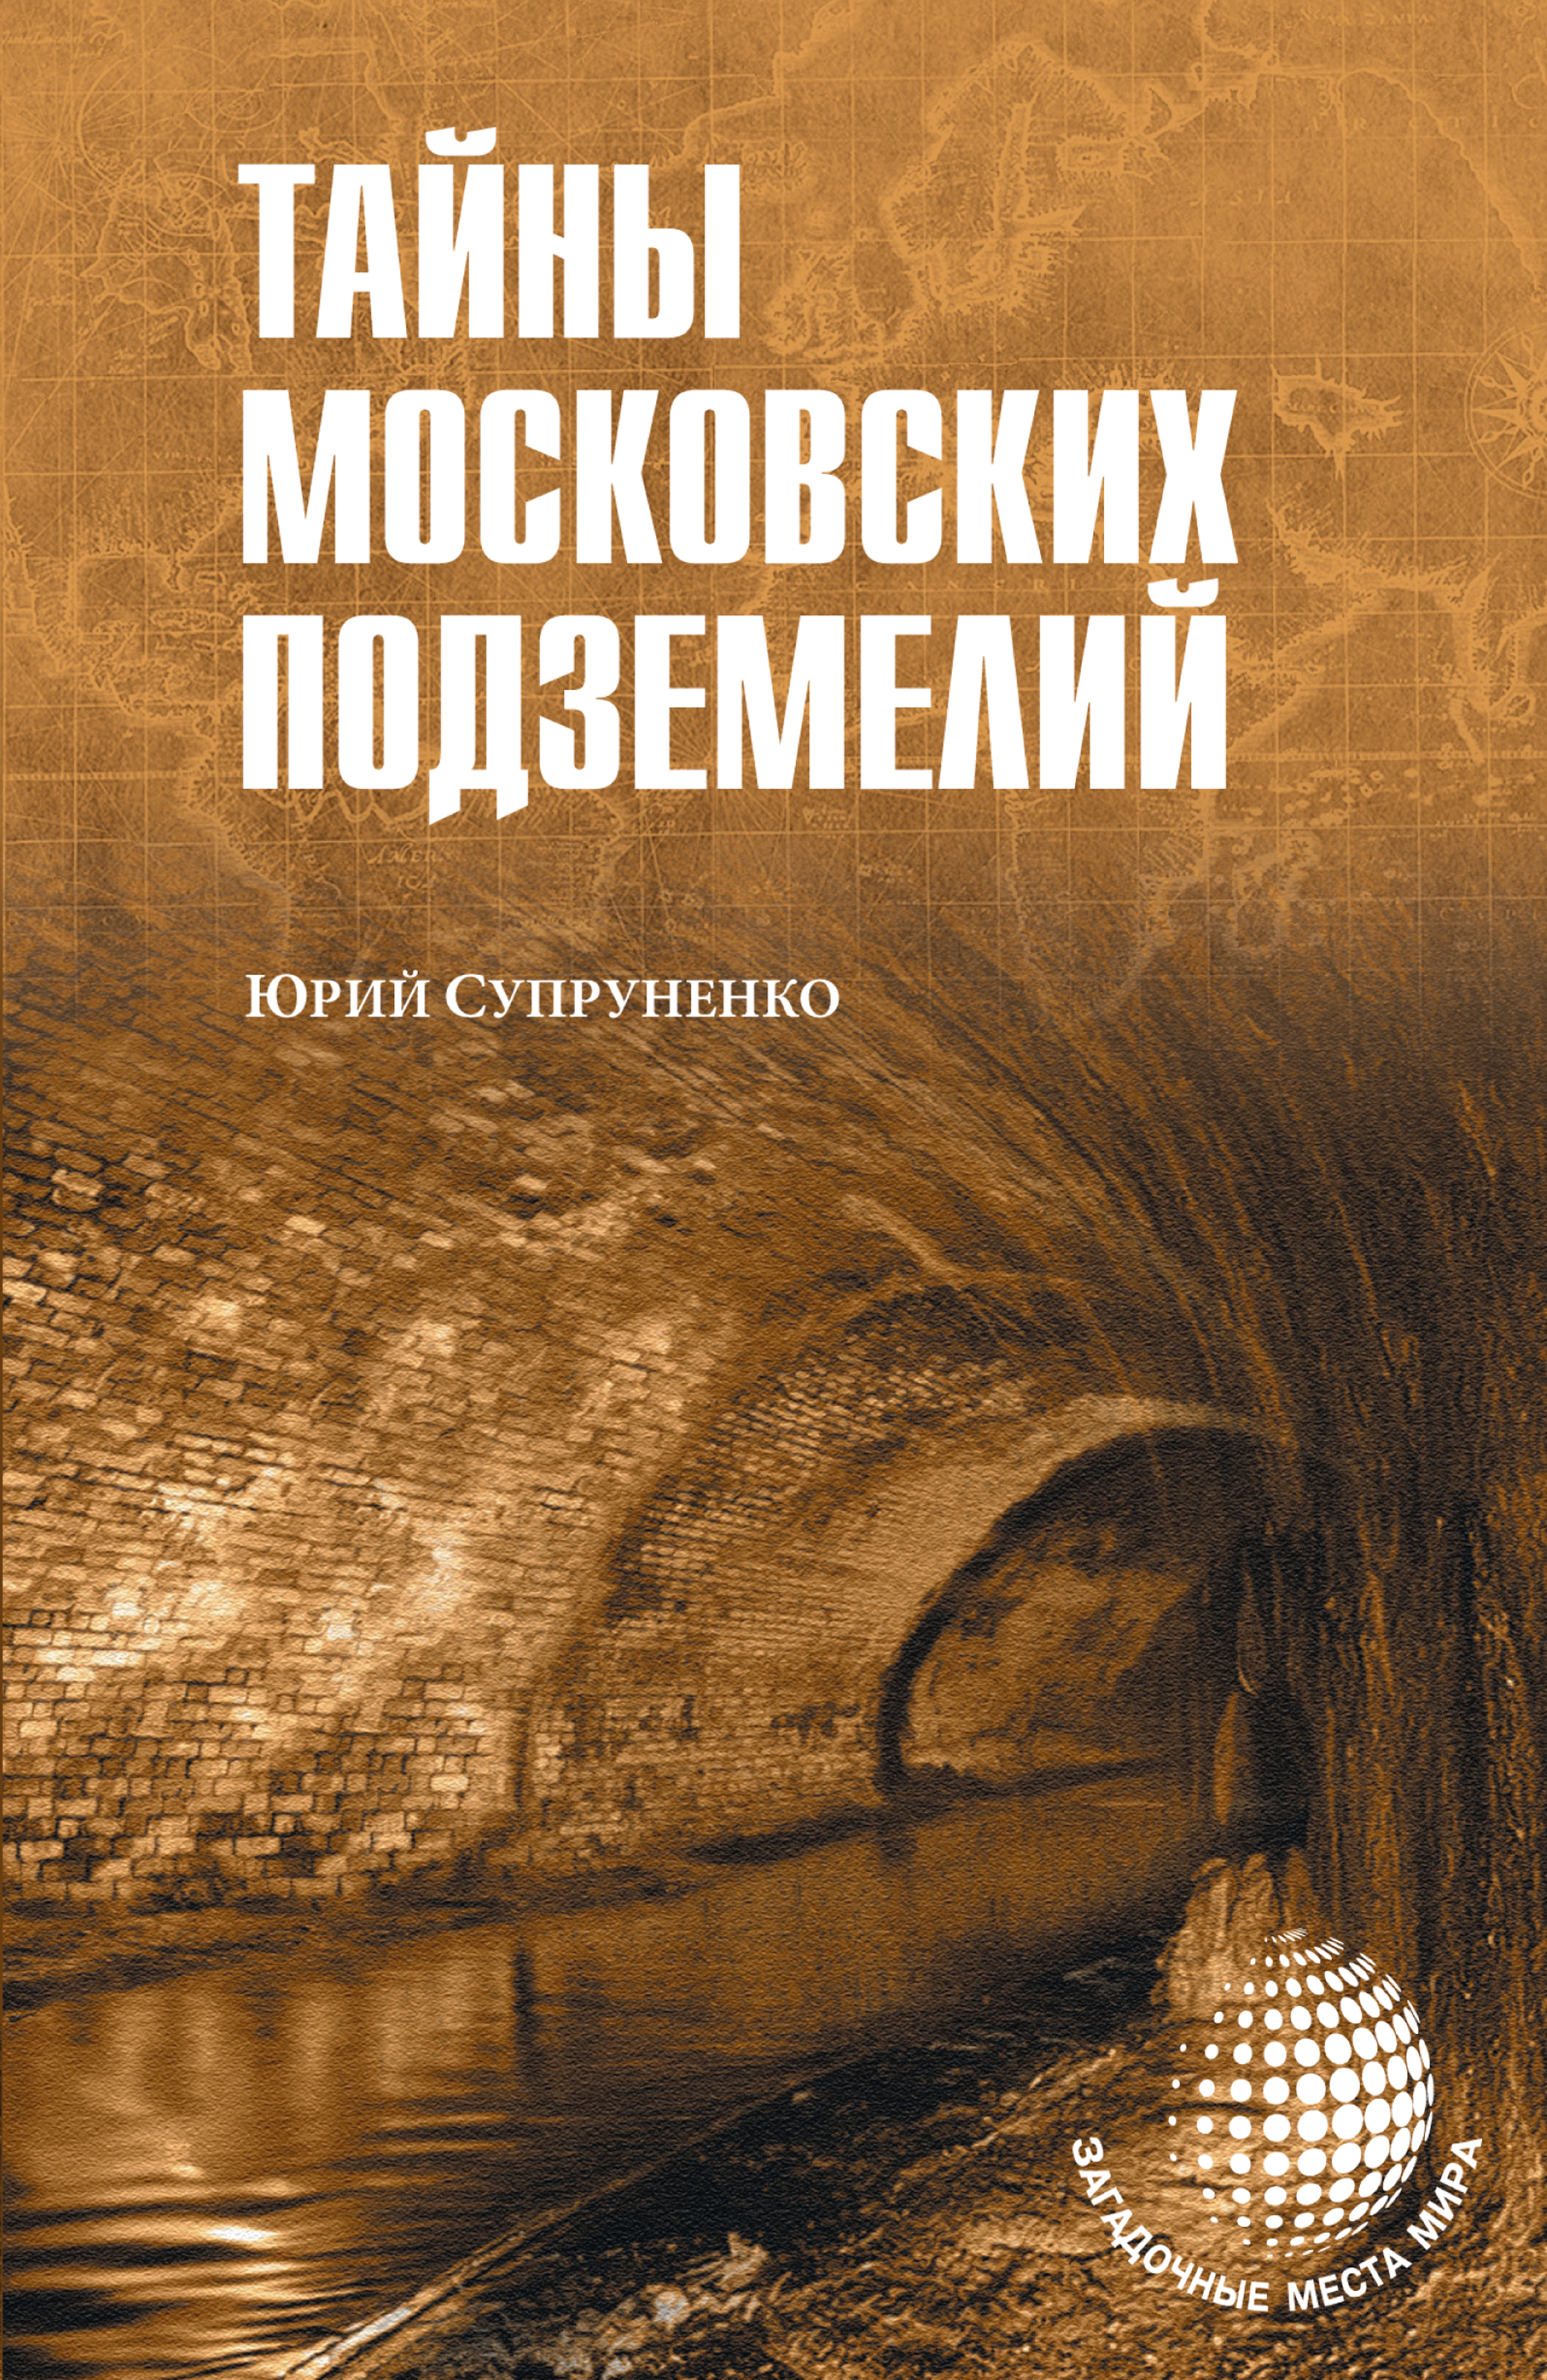 Книга Тайны московских подземелий из серии Загадочные места мира, созданная Юрий Супруненко, написана в жанре Документальная литература. Стоимость электронной книги Тайны московских подземелий с идентификатором 32842367 составляет 149.00 руб.